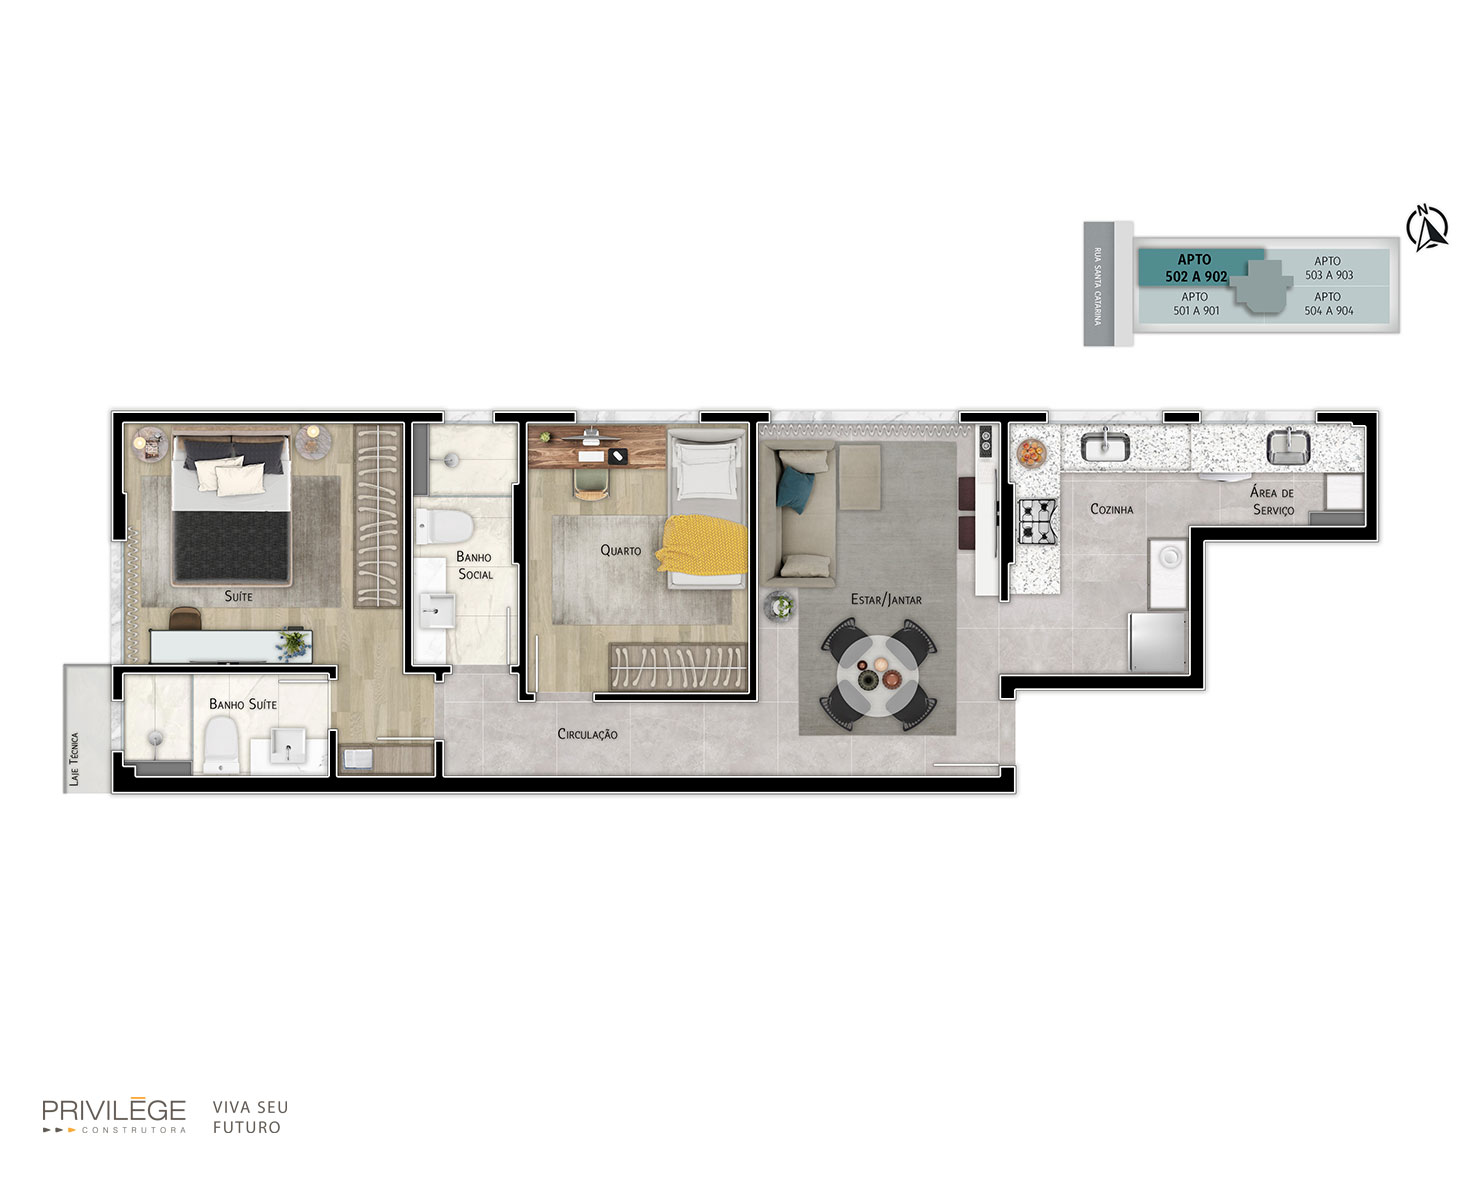 Apartamento 2 quartos – 502 a 902